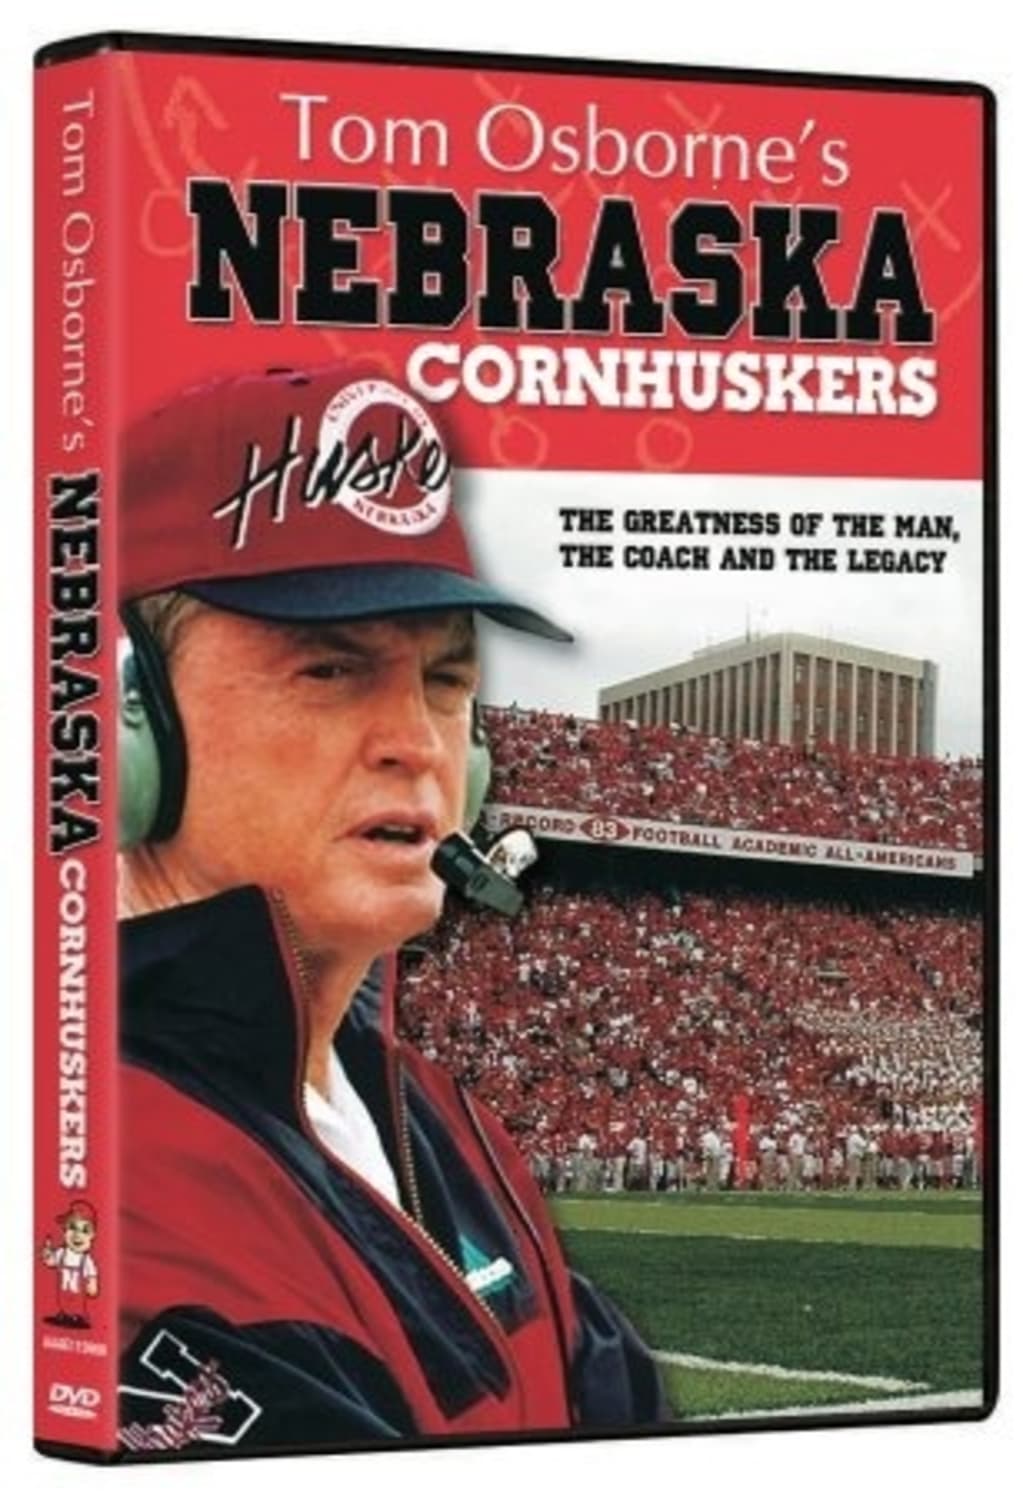 Tom Osborne’s Nebraska Cornhuskers (DVD) on MovieShack